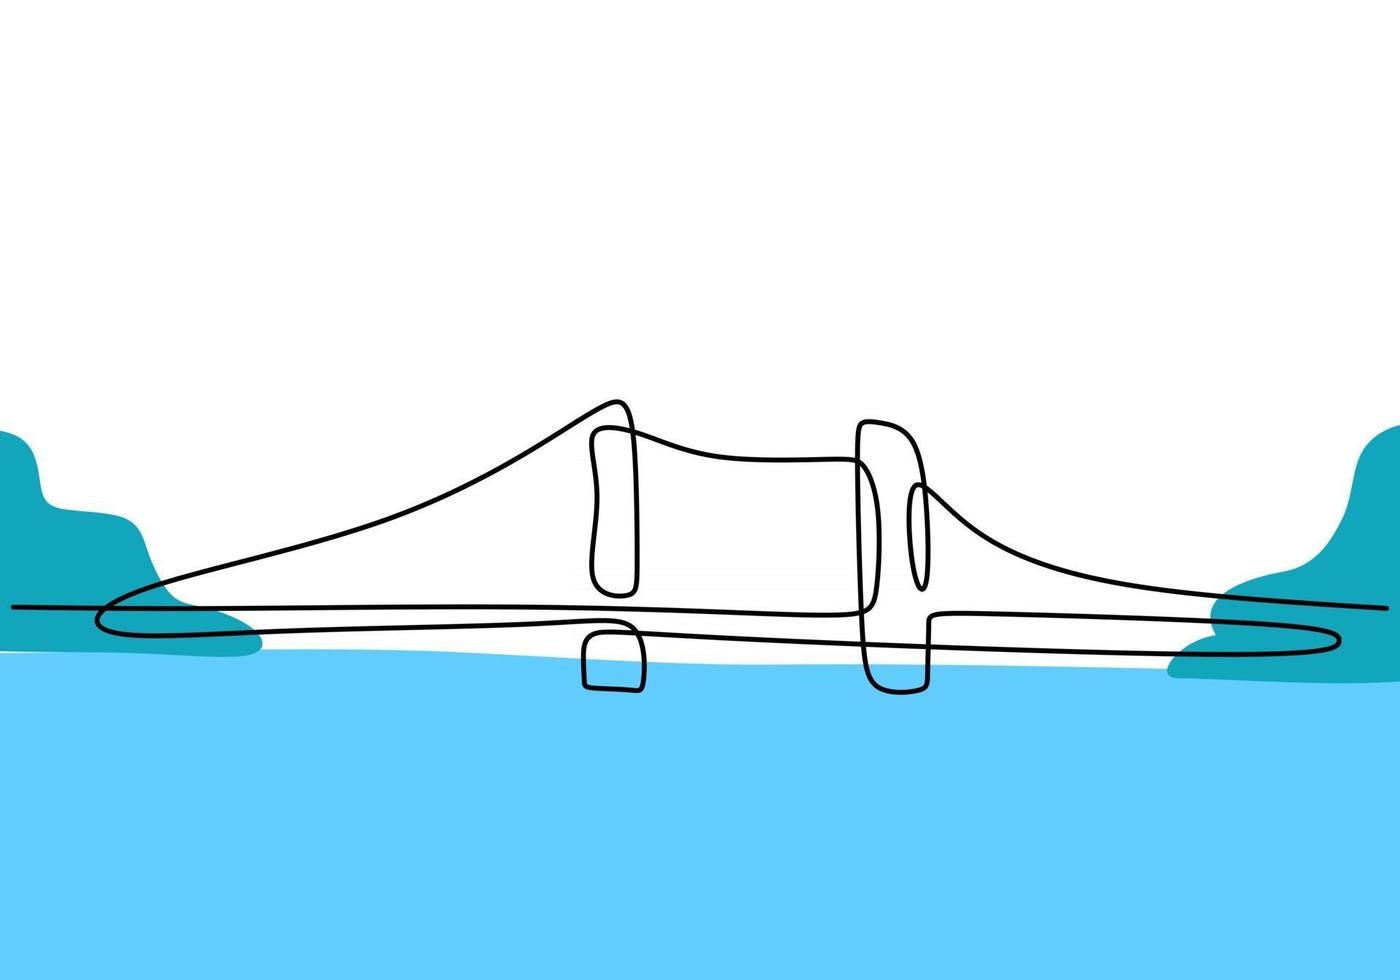 pont géant sur la rivière. une ligne continue de conception de dessin de pont. style minimaliste moderne simple isolé sur fond blanc. vecteur